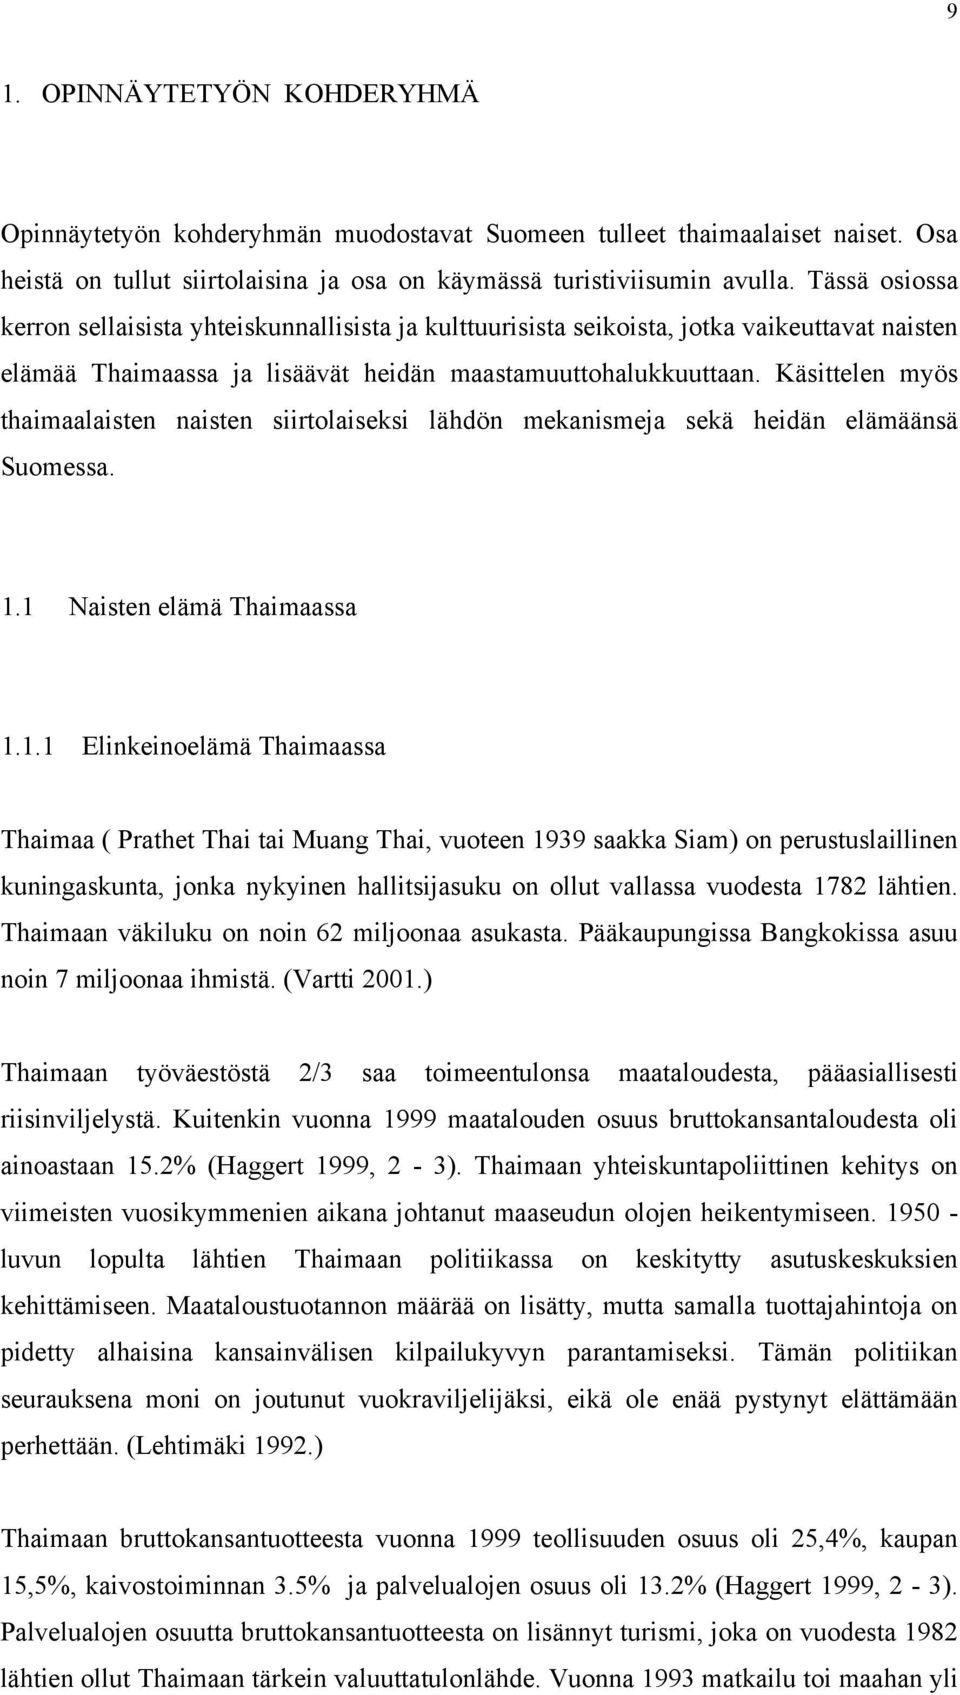 Käsittelen myös thaimaalaisten naisten siirtolaiseksi lähdön mekanismeja sekä heidän elämäänsä Suomessa. 1.